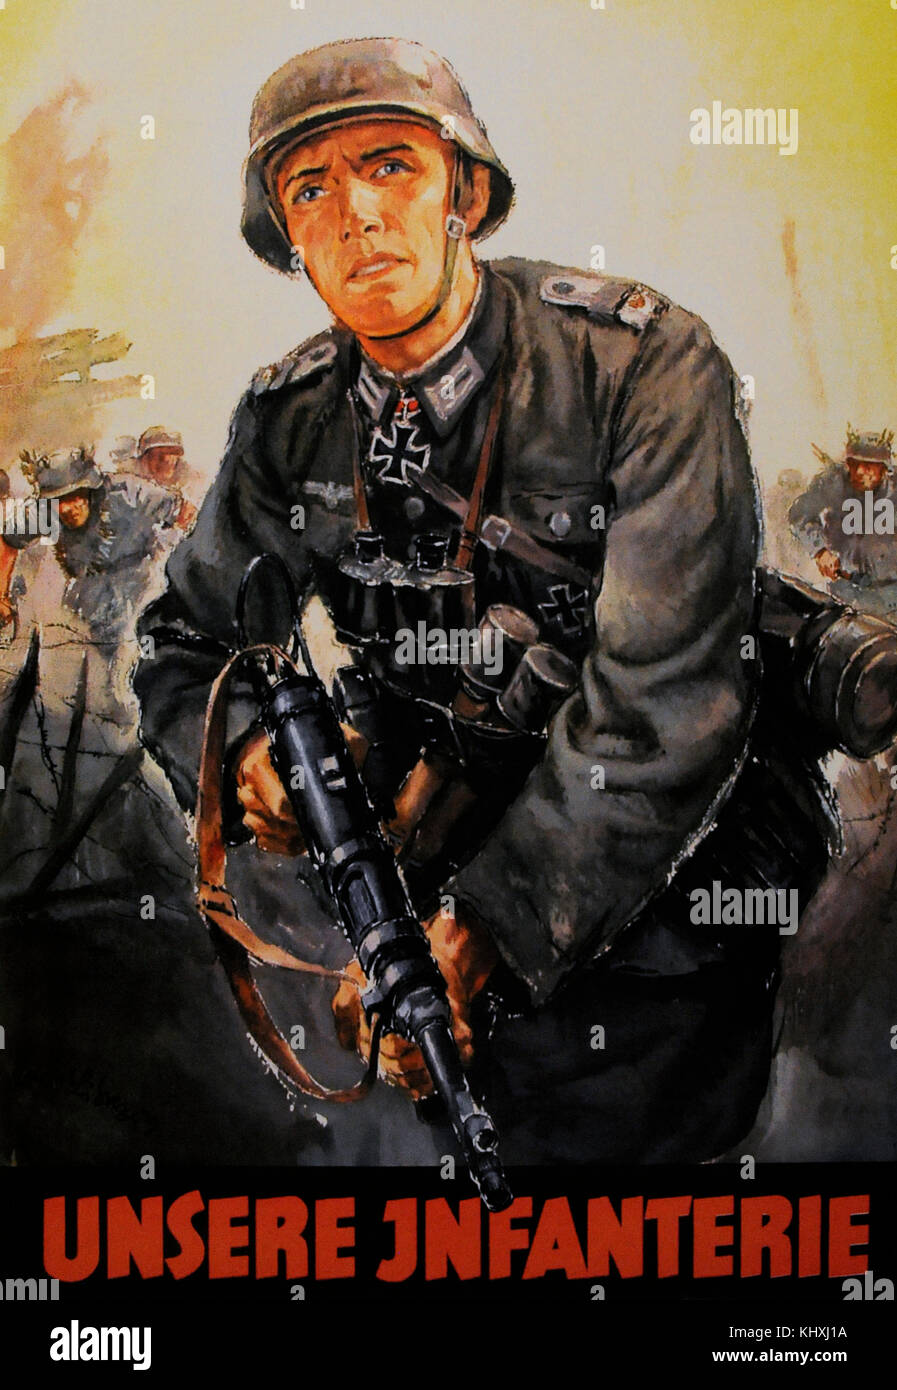 L'affiche de la propagande allemande d'encourager les jeunes à faire le service militaire dans l'armée de la Wehrmacht. Il a également été adressée aux jeunes de la Haute-Silésie enregistrés en Volksliste (liste du peuple allemand dans les territoires occupés). Banque D'Images